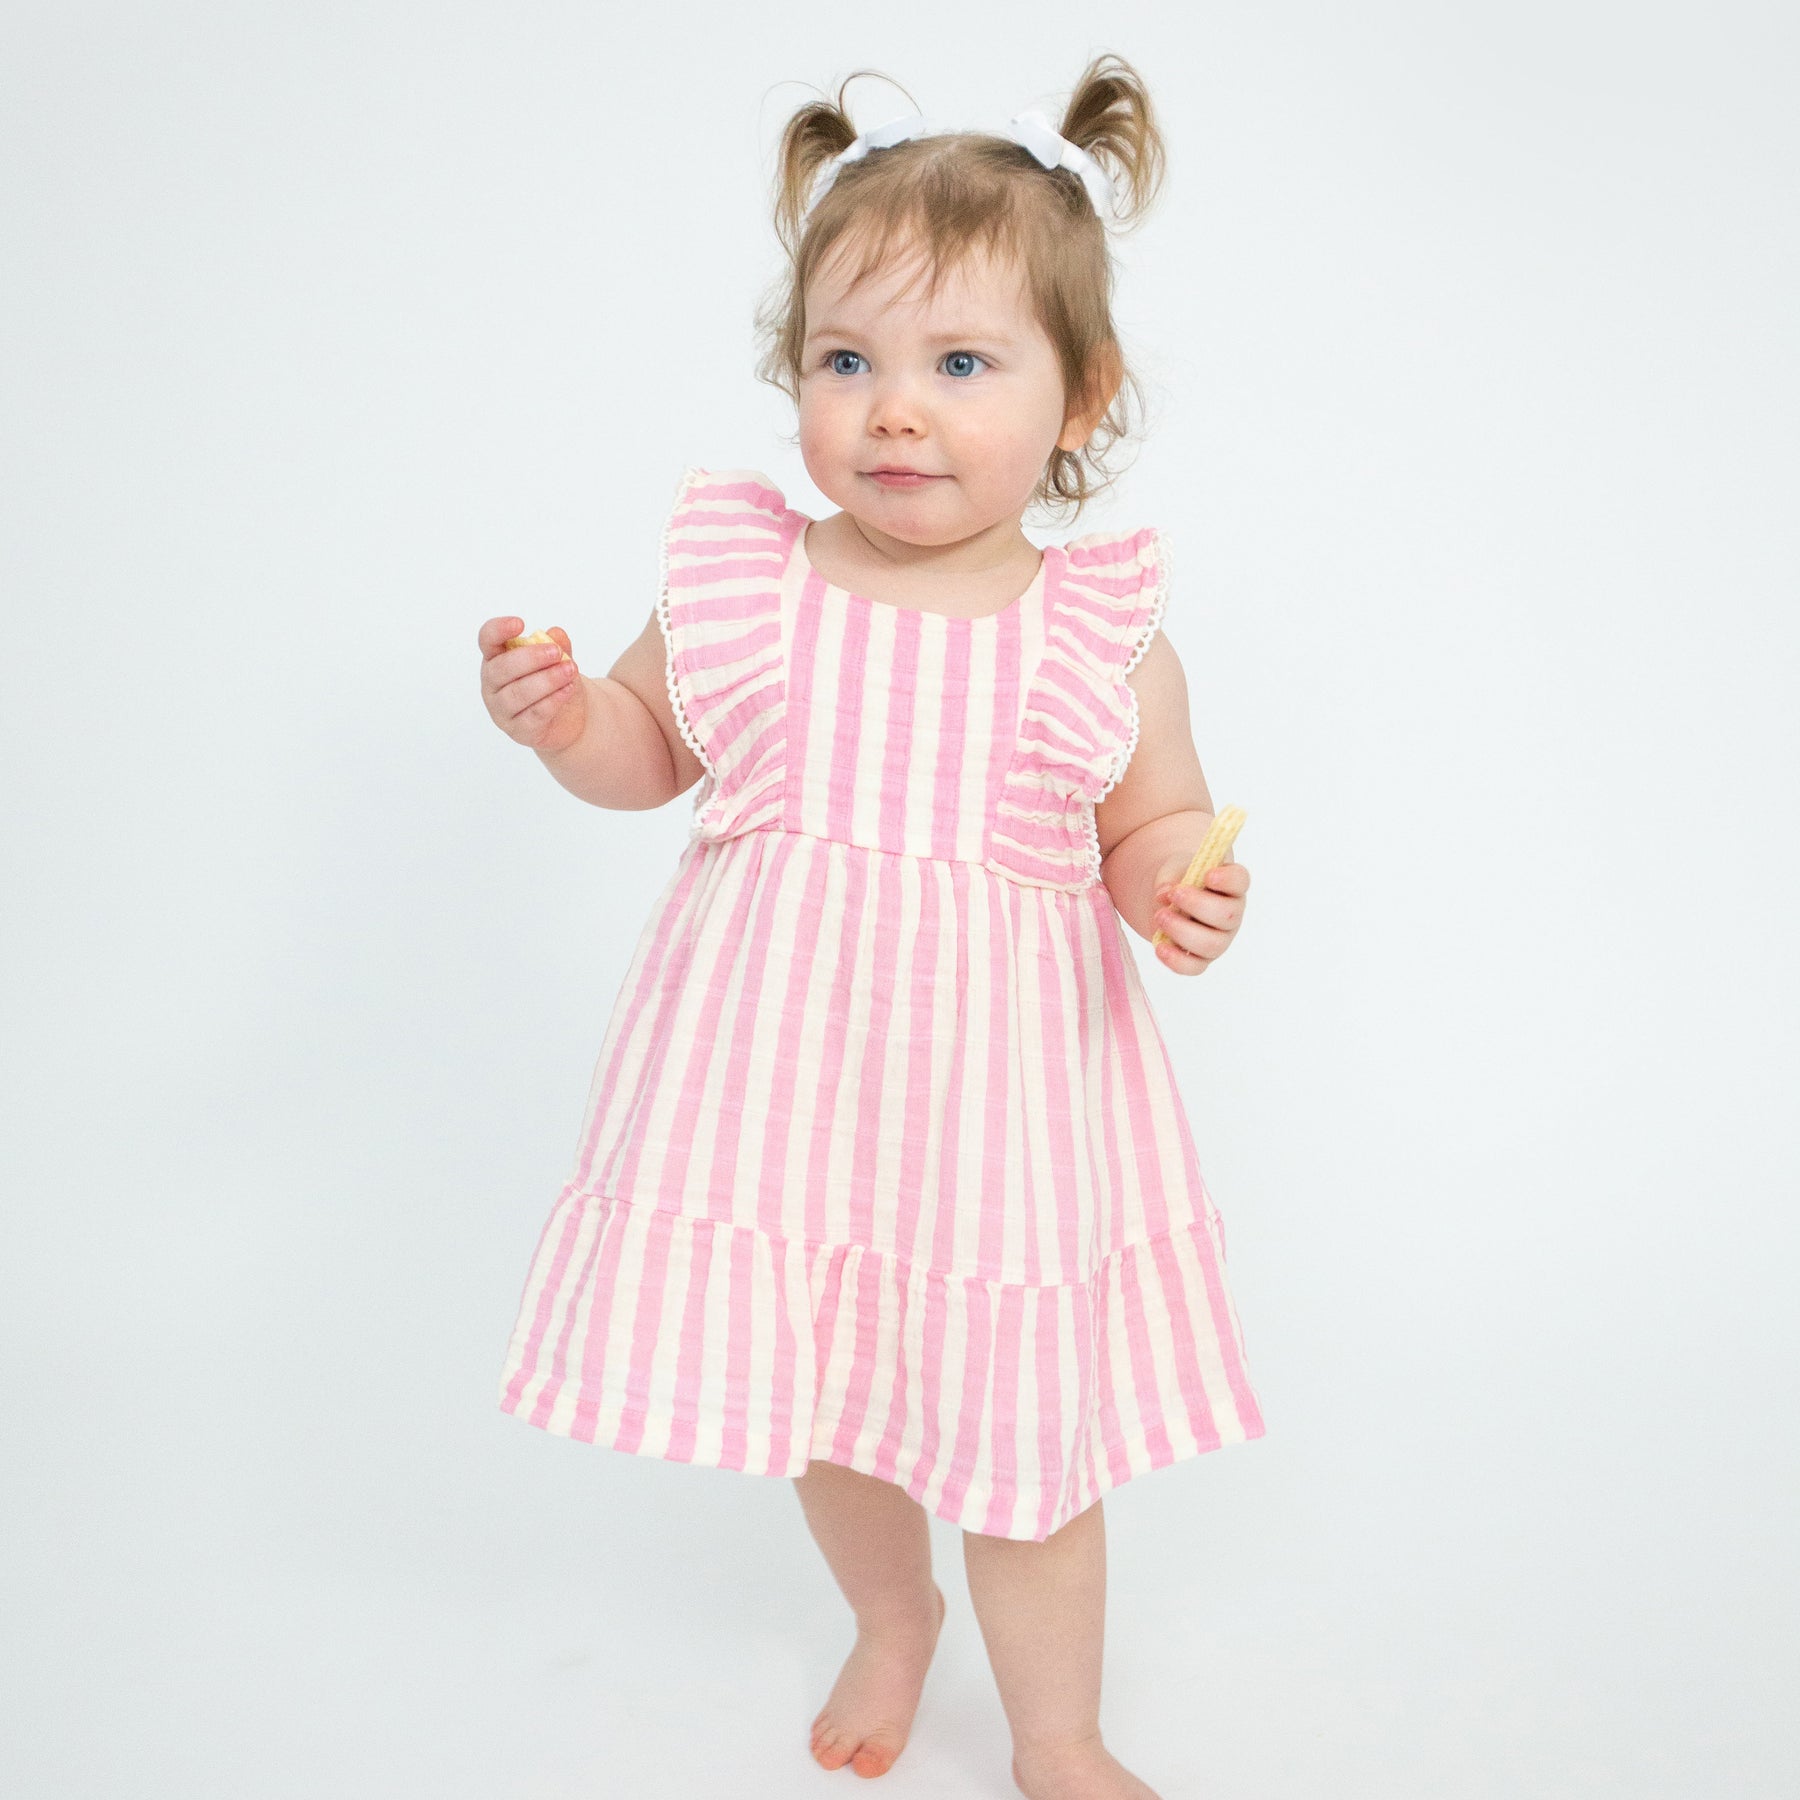 Pink Stripe Muslin Picot Trim Dress